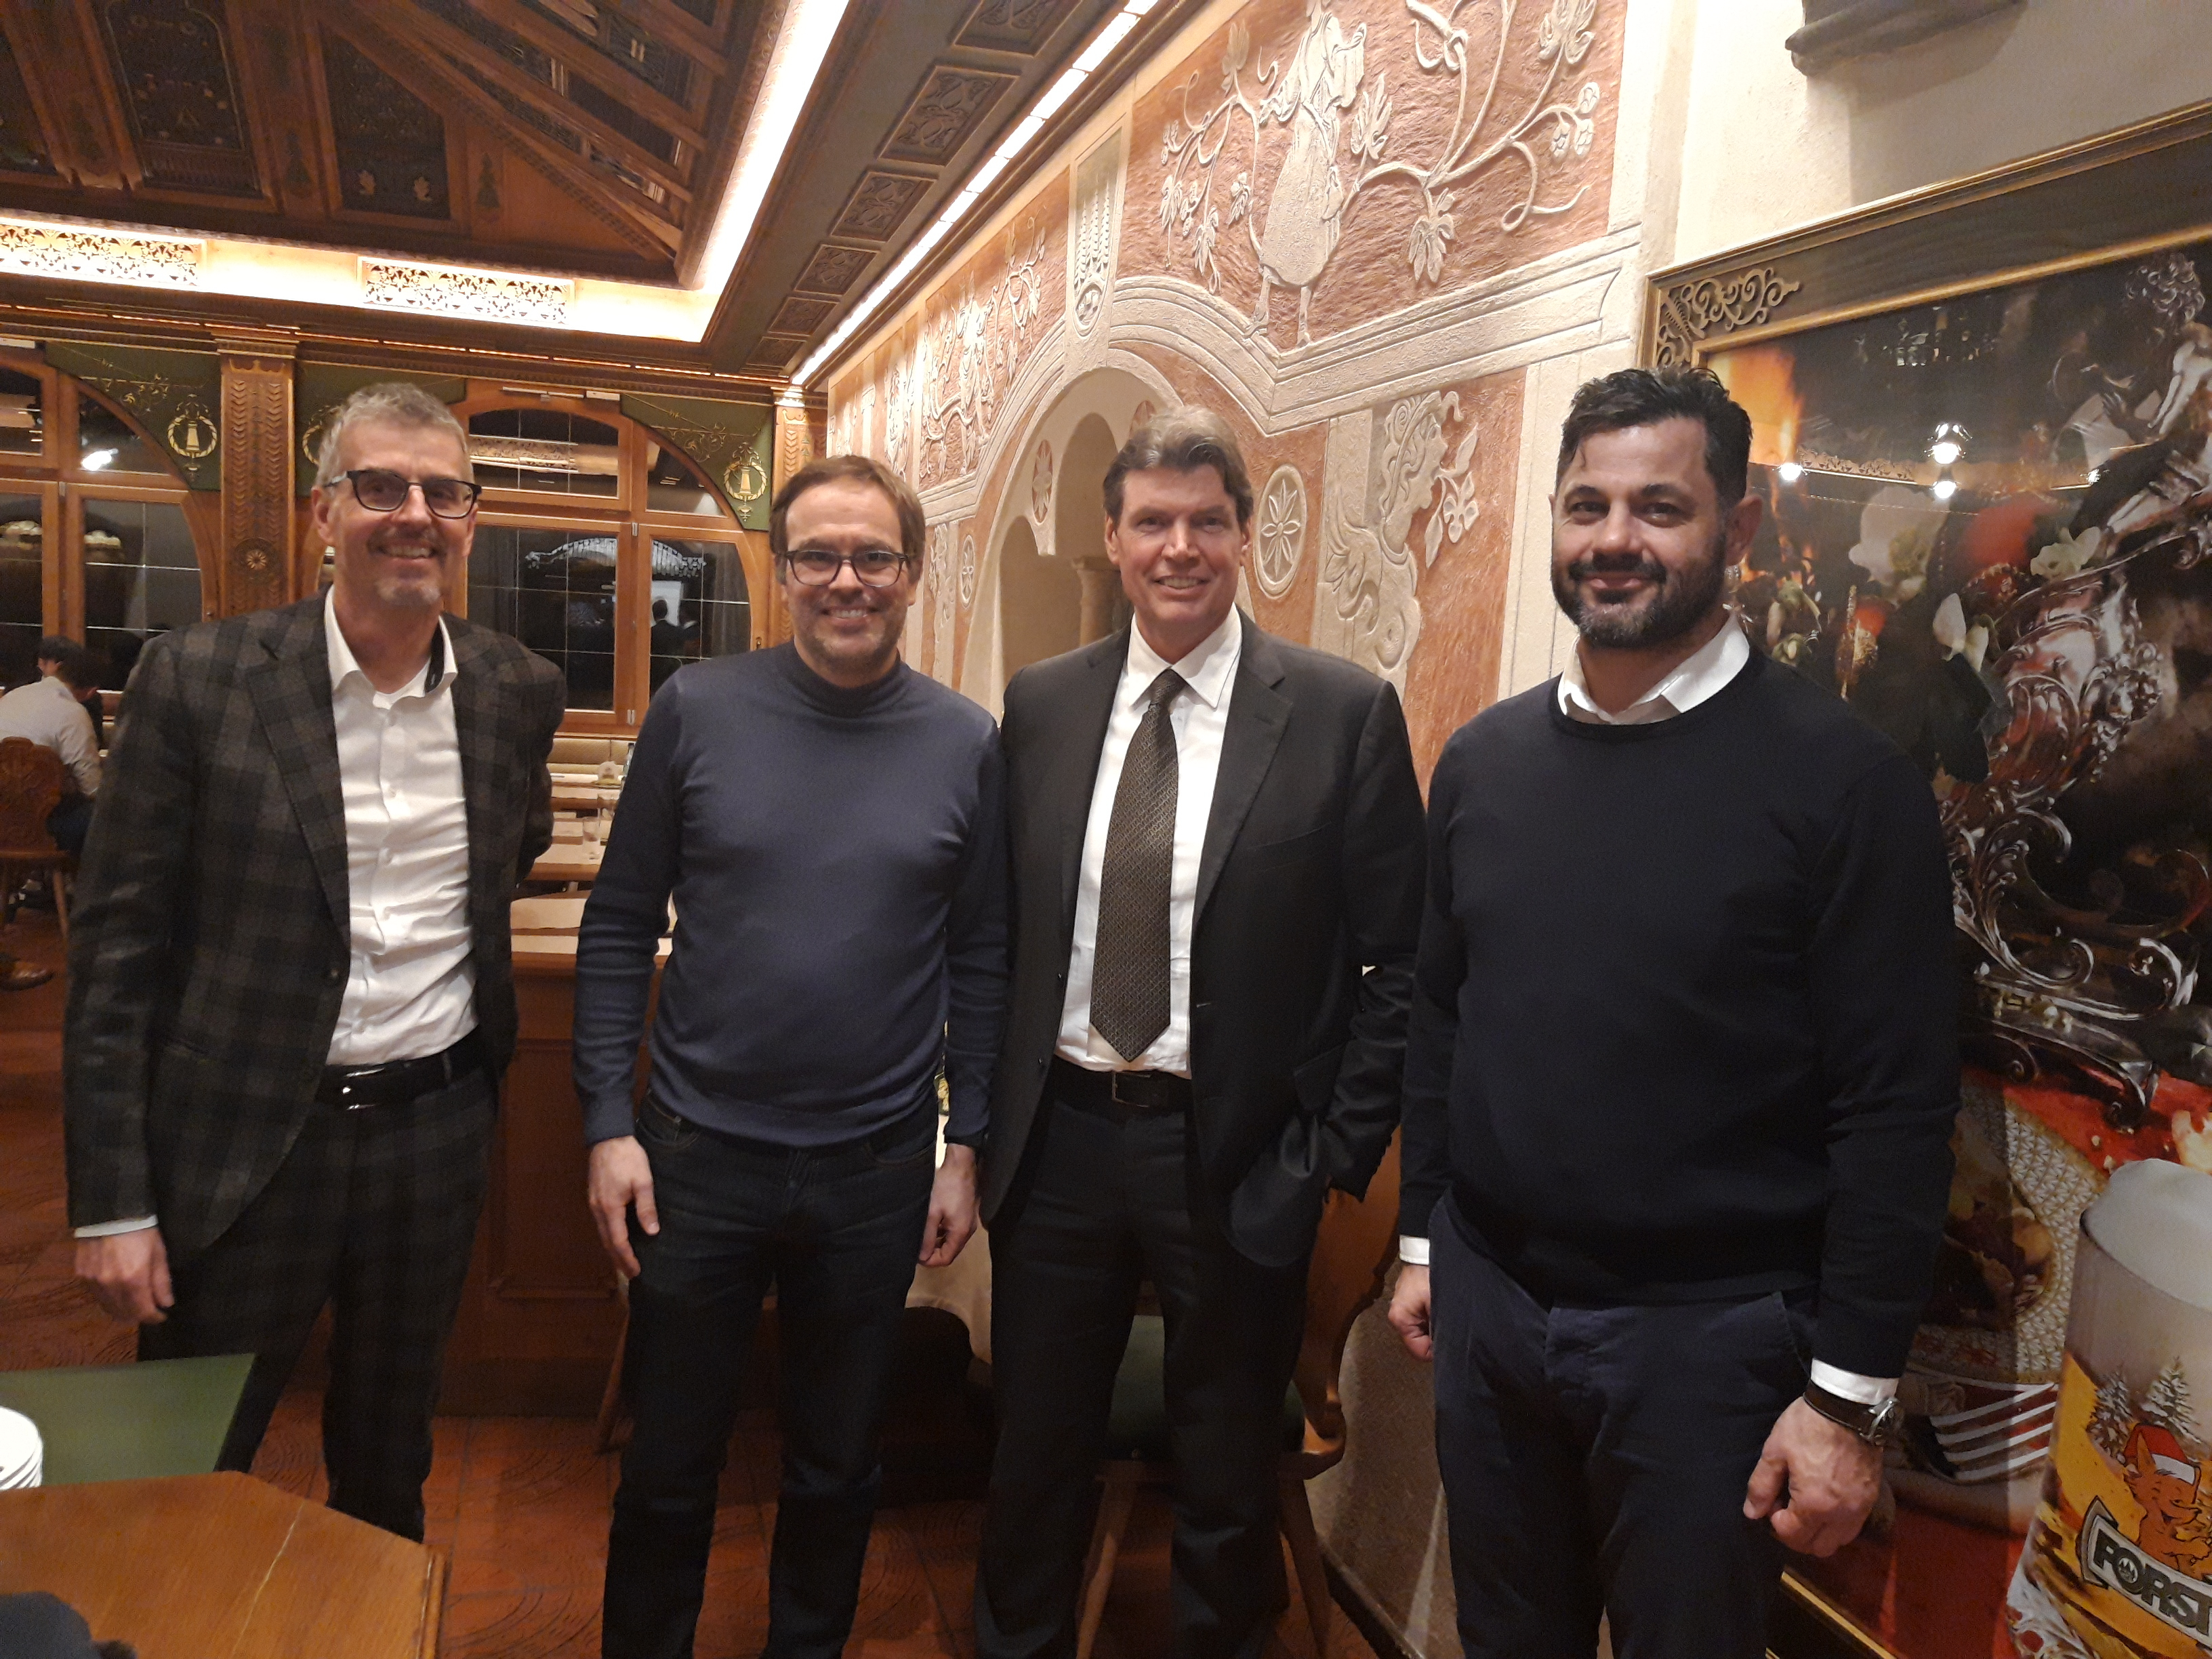 Da sinistra Wolfgang Alber, Vice-Rappresentante comprensoriale Burgraviato; Markus Kofler Vice-Presidente Confindustria Alto Adige;  Gerhard Comper, Birra Forst Spa; Roland Tinkhauser, sindaco di Falzes.